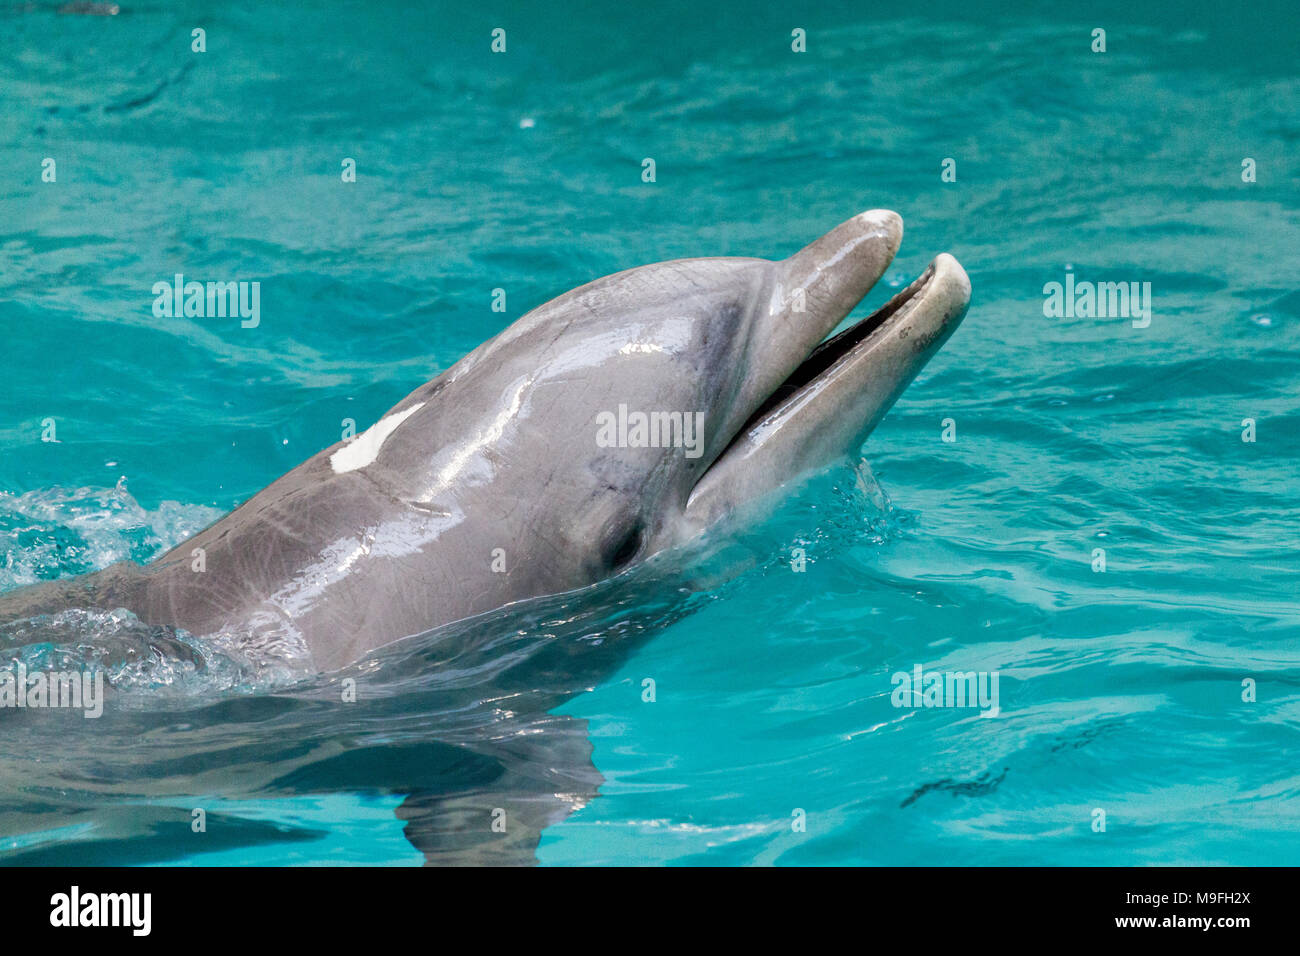 Ein Delphin schwimmt in einem großen Pool Stockfoto